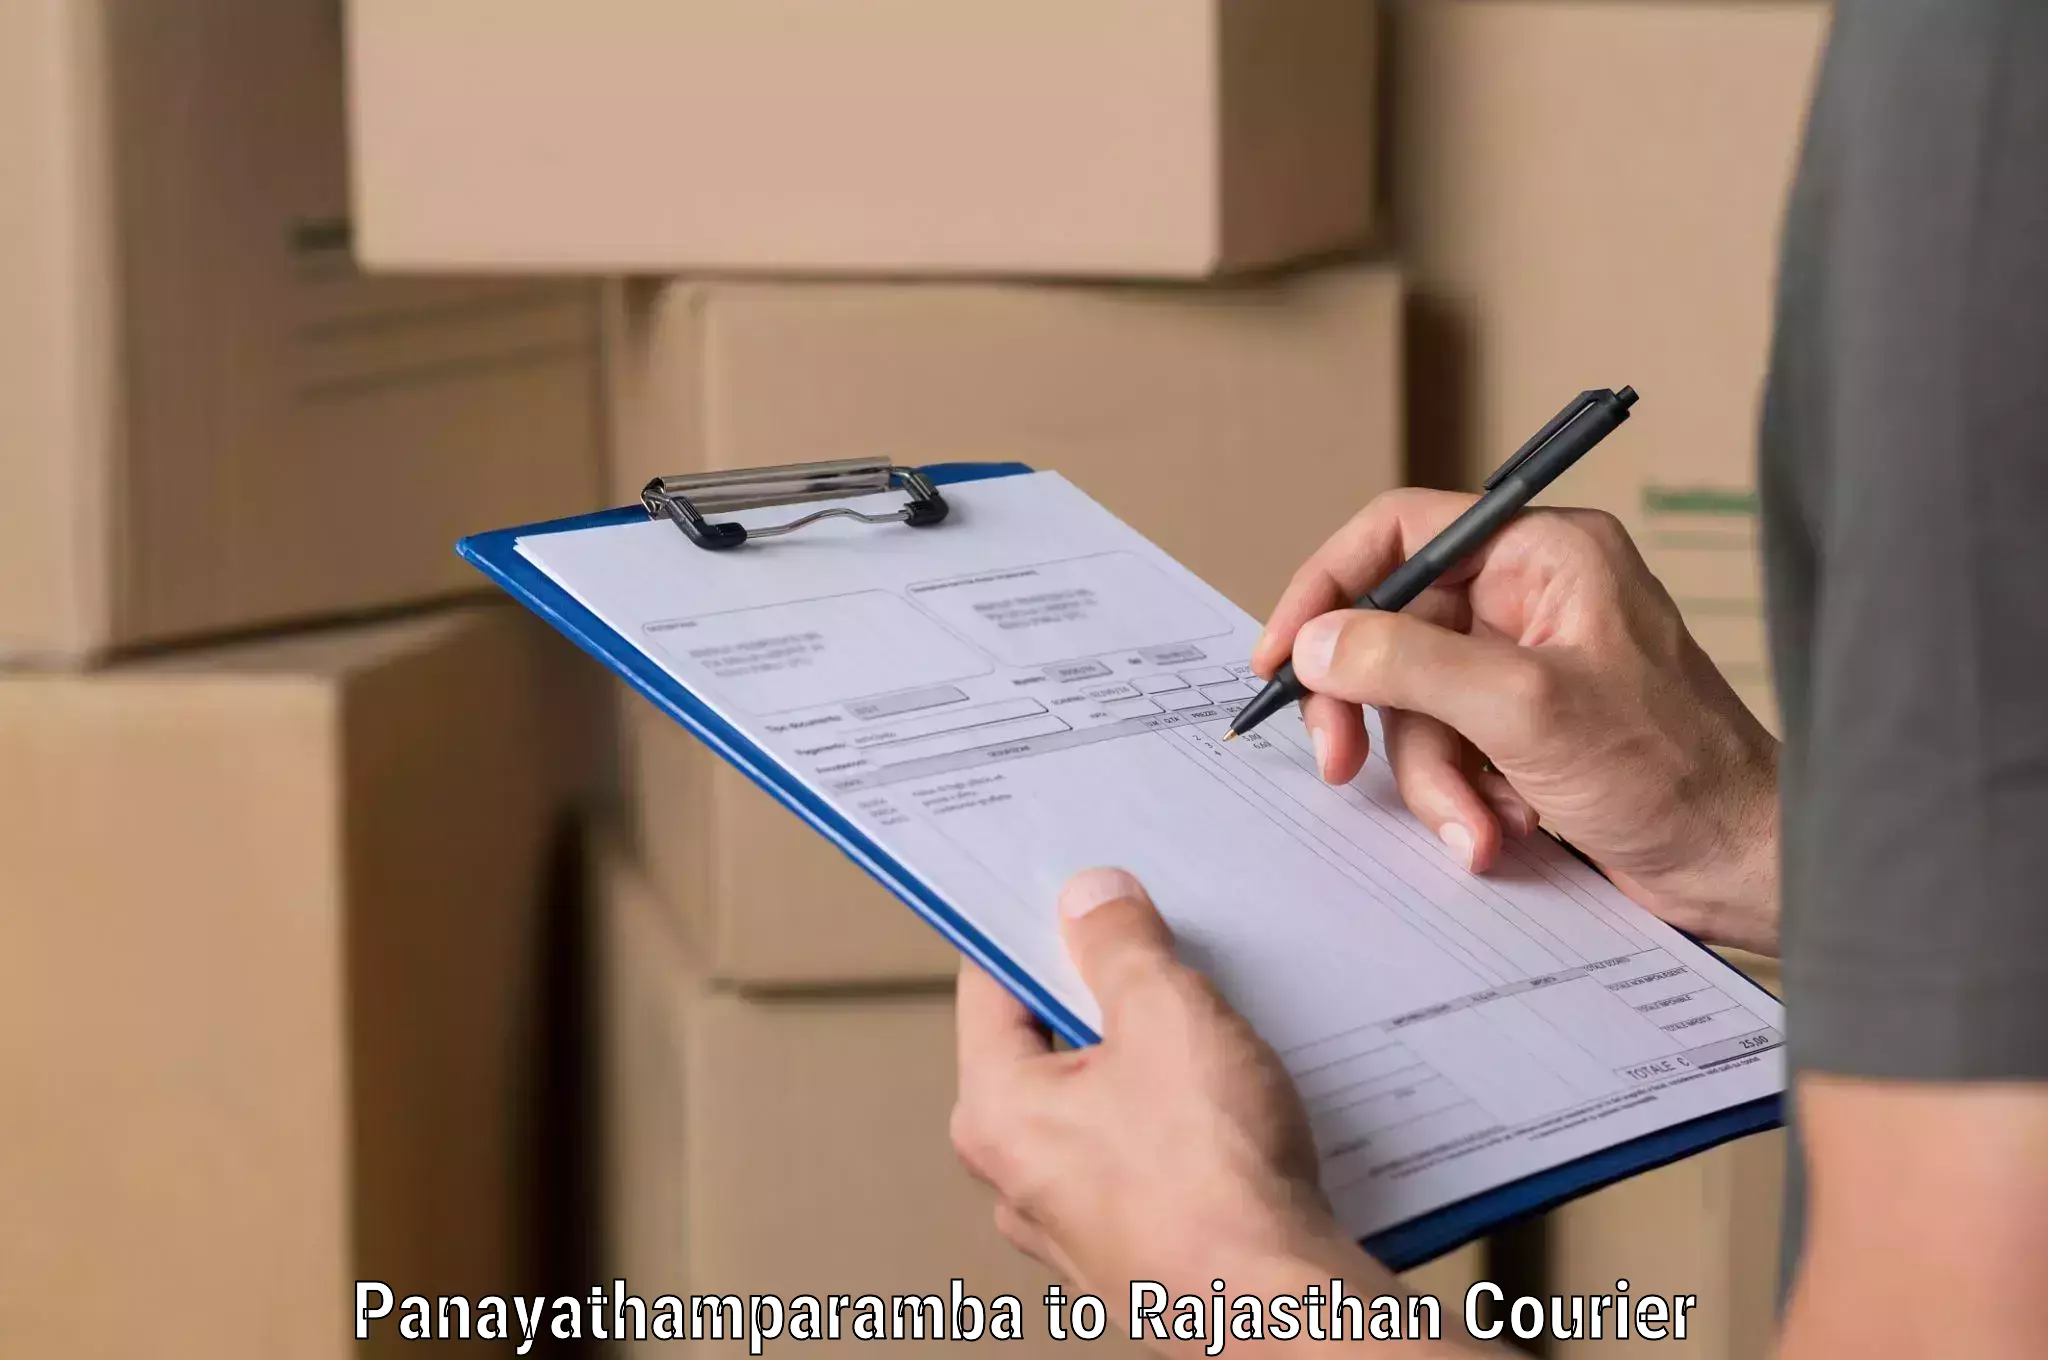 Courier services in Panayathamparamba to Nagar